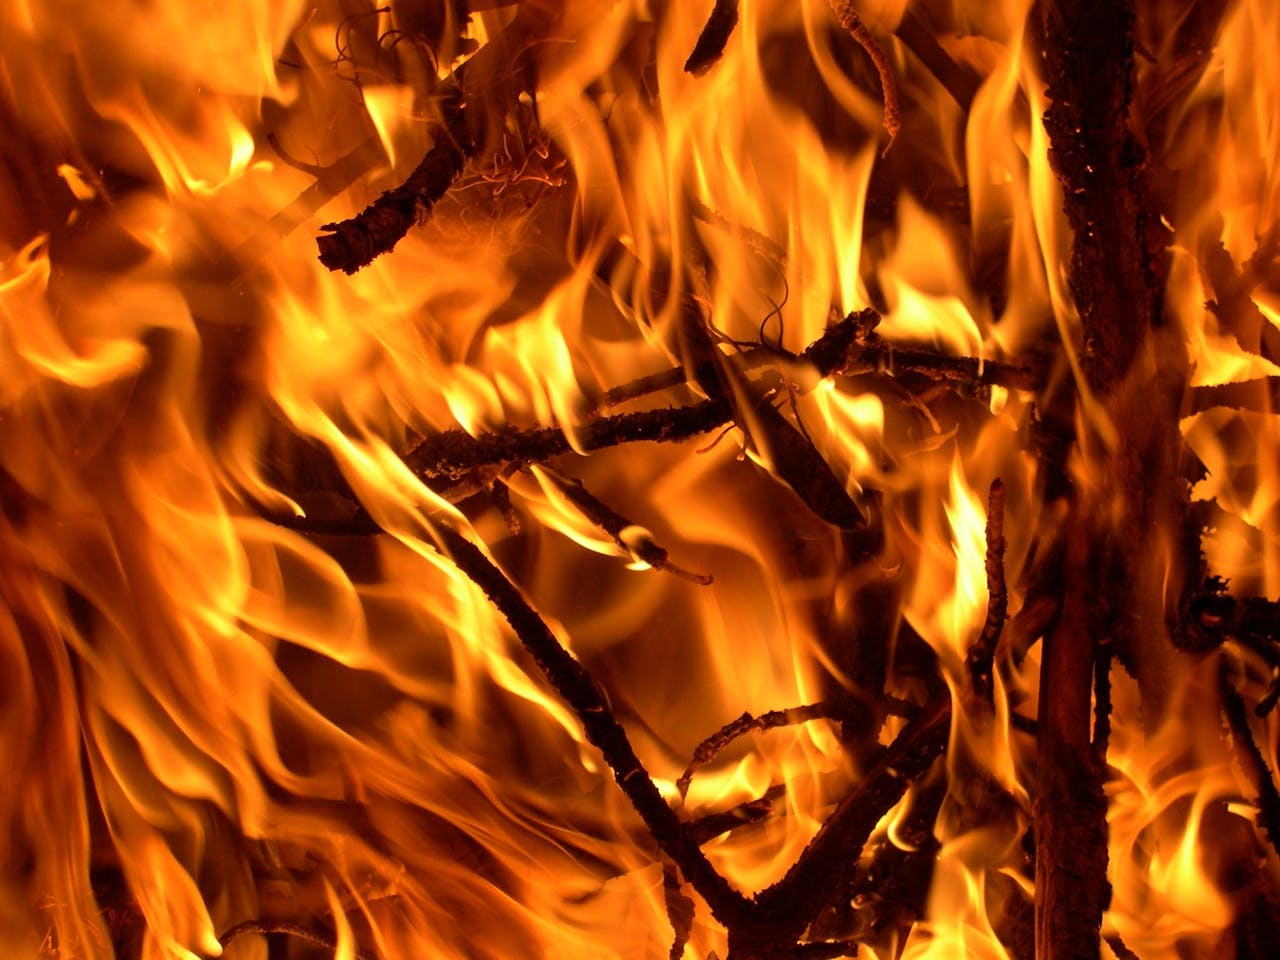 Een close-up beeld van een brand.